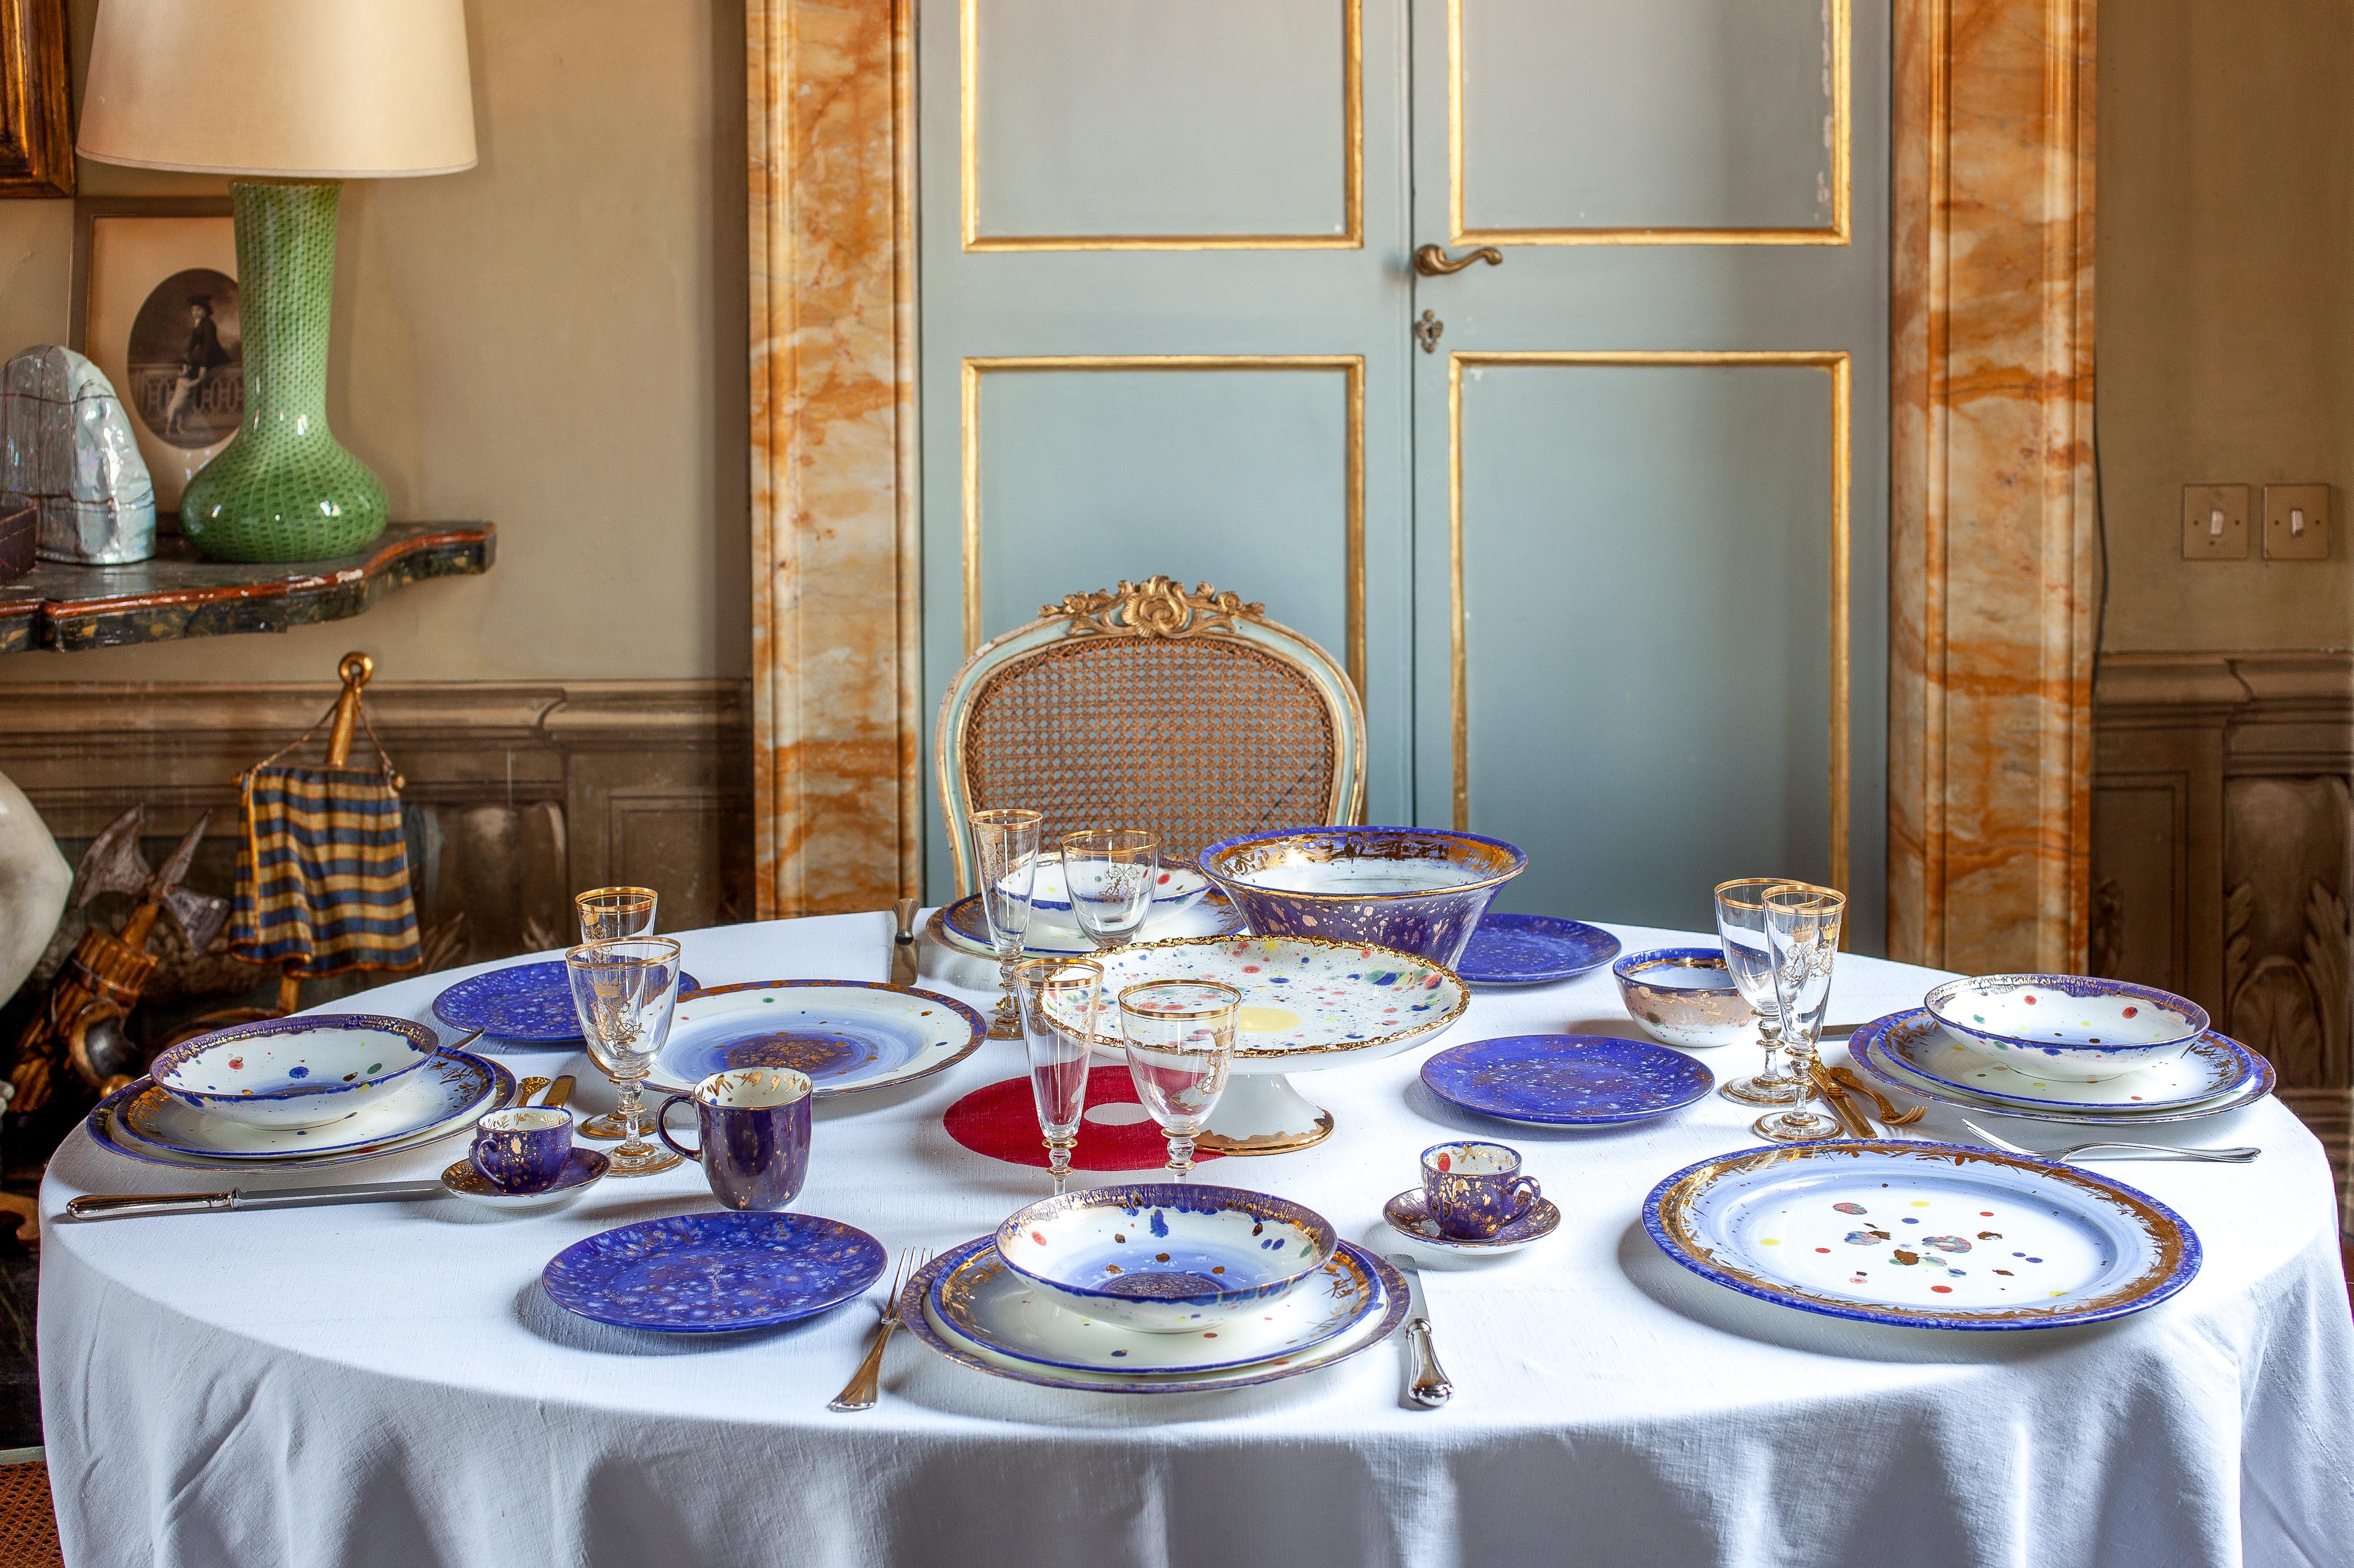 Fabriquée à la main en Italie à partir de la meilleure porcelaine, cette assiette Apollo Bianco nous entraîne dans un monde magique. Les nuances de bleu lapis-lazuli évoquent la magie des romans orientaux. Un conte de fées est révélé par des pépites